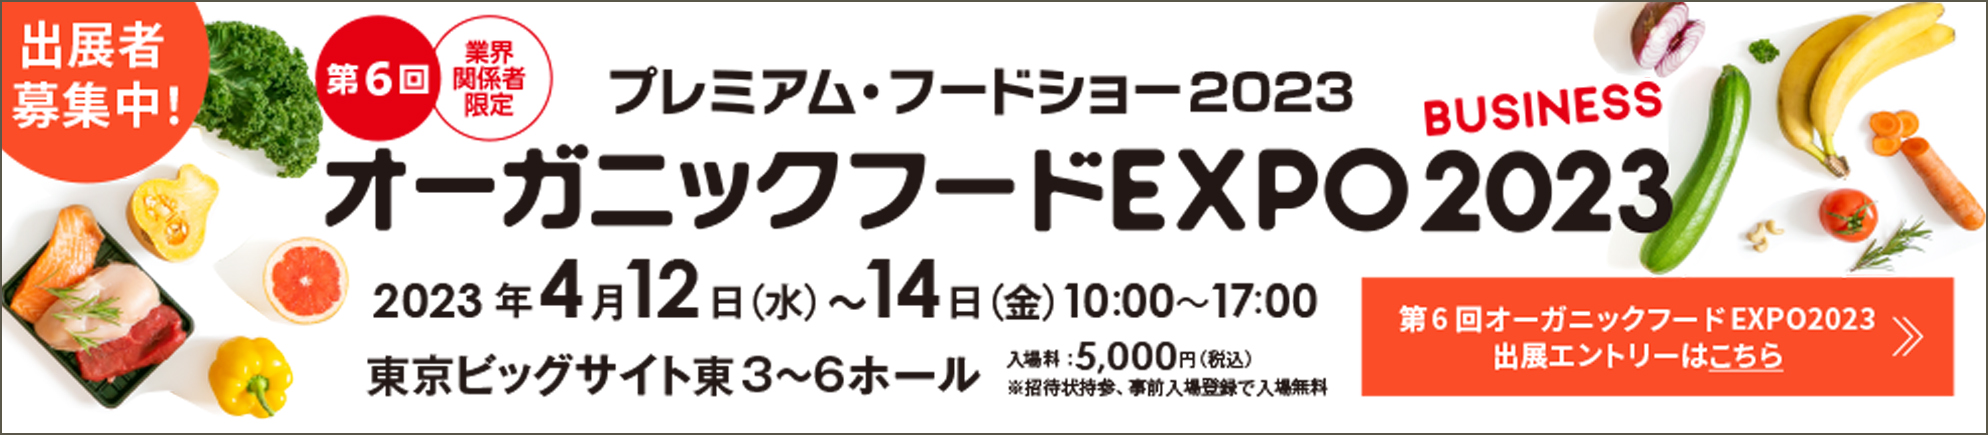 第5回 オーガニックフードEXPO2022 2022年4月13日（水）〜15日（金） 10:00〜17:00 東京ビッグサイト東3〜6ホール 入場料:5,000円（税込）